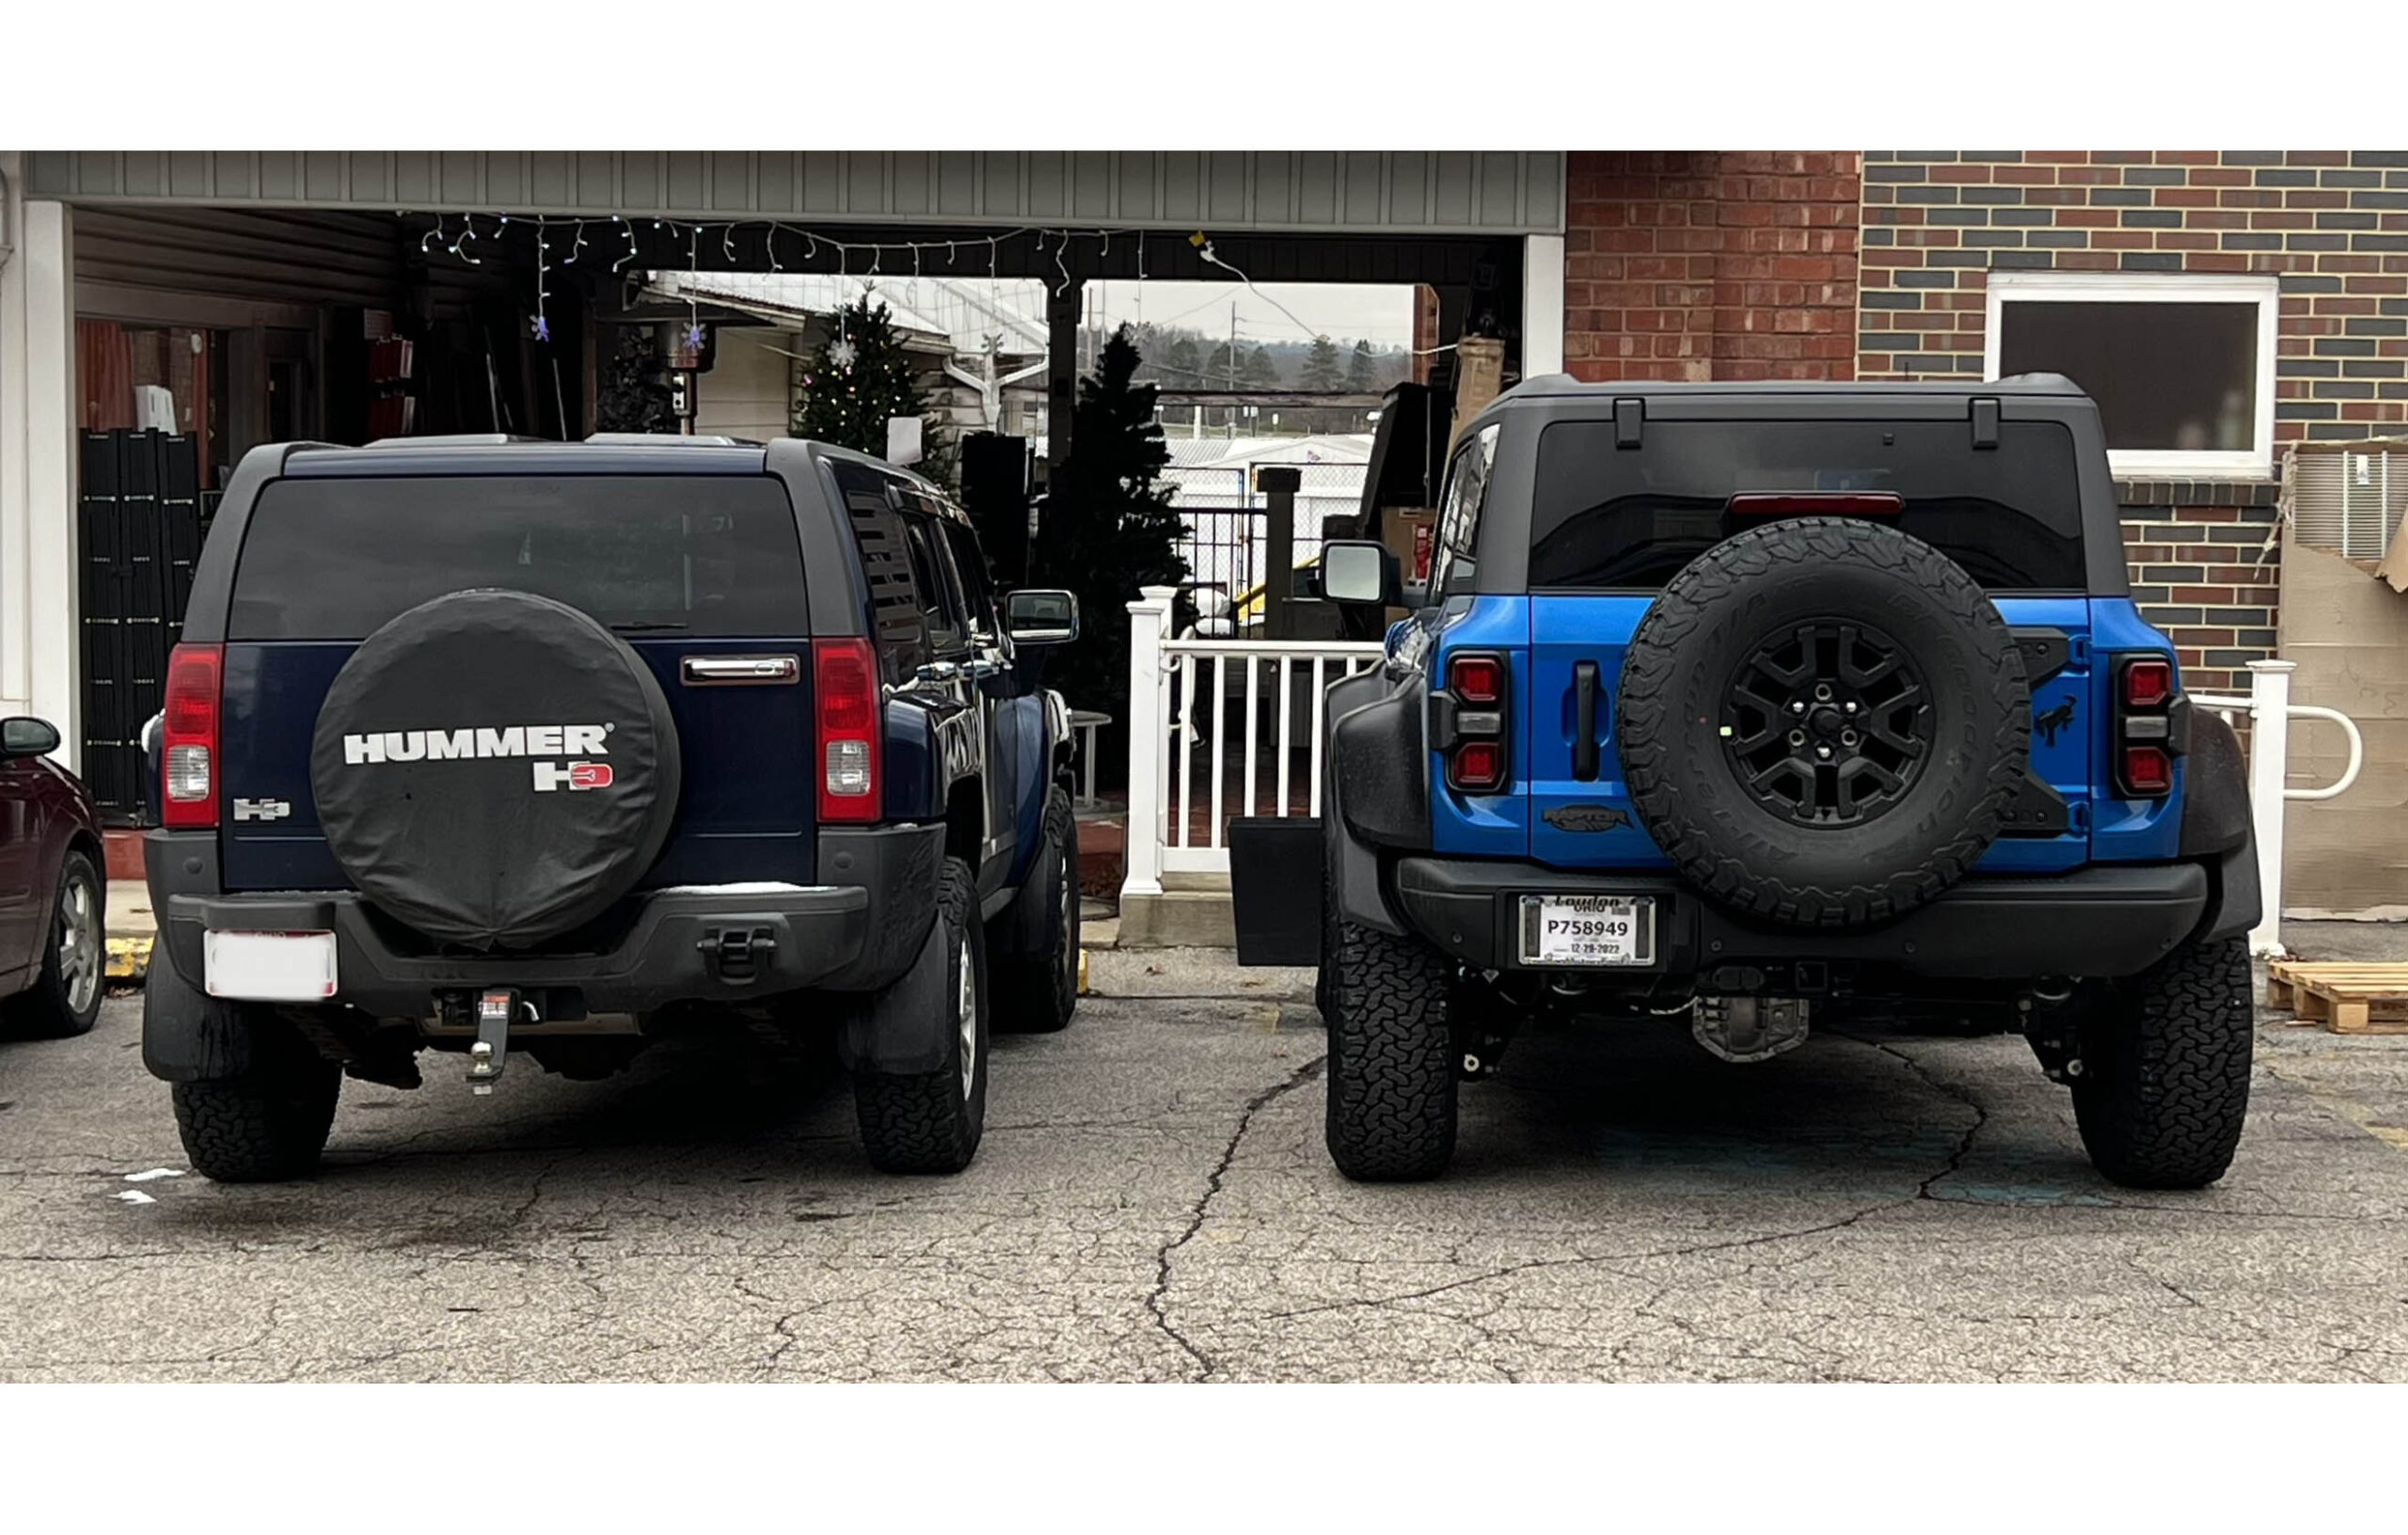 Bronco Raptor vs Hummer H3 size comparison | Bronco6G - 2021+ Ford Bronco &  Bronco Raptor Forum, News, Blog & Owners Community